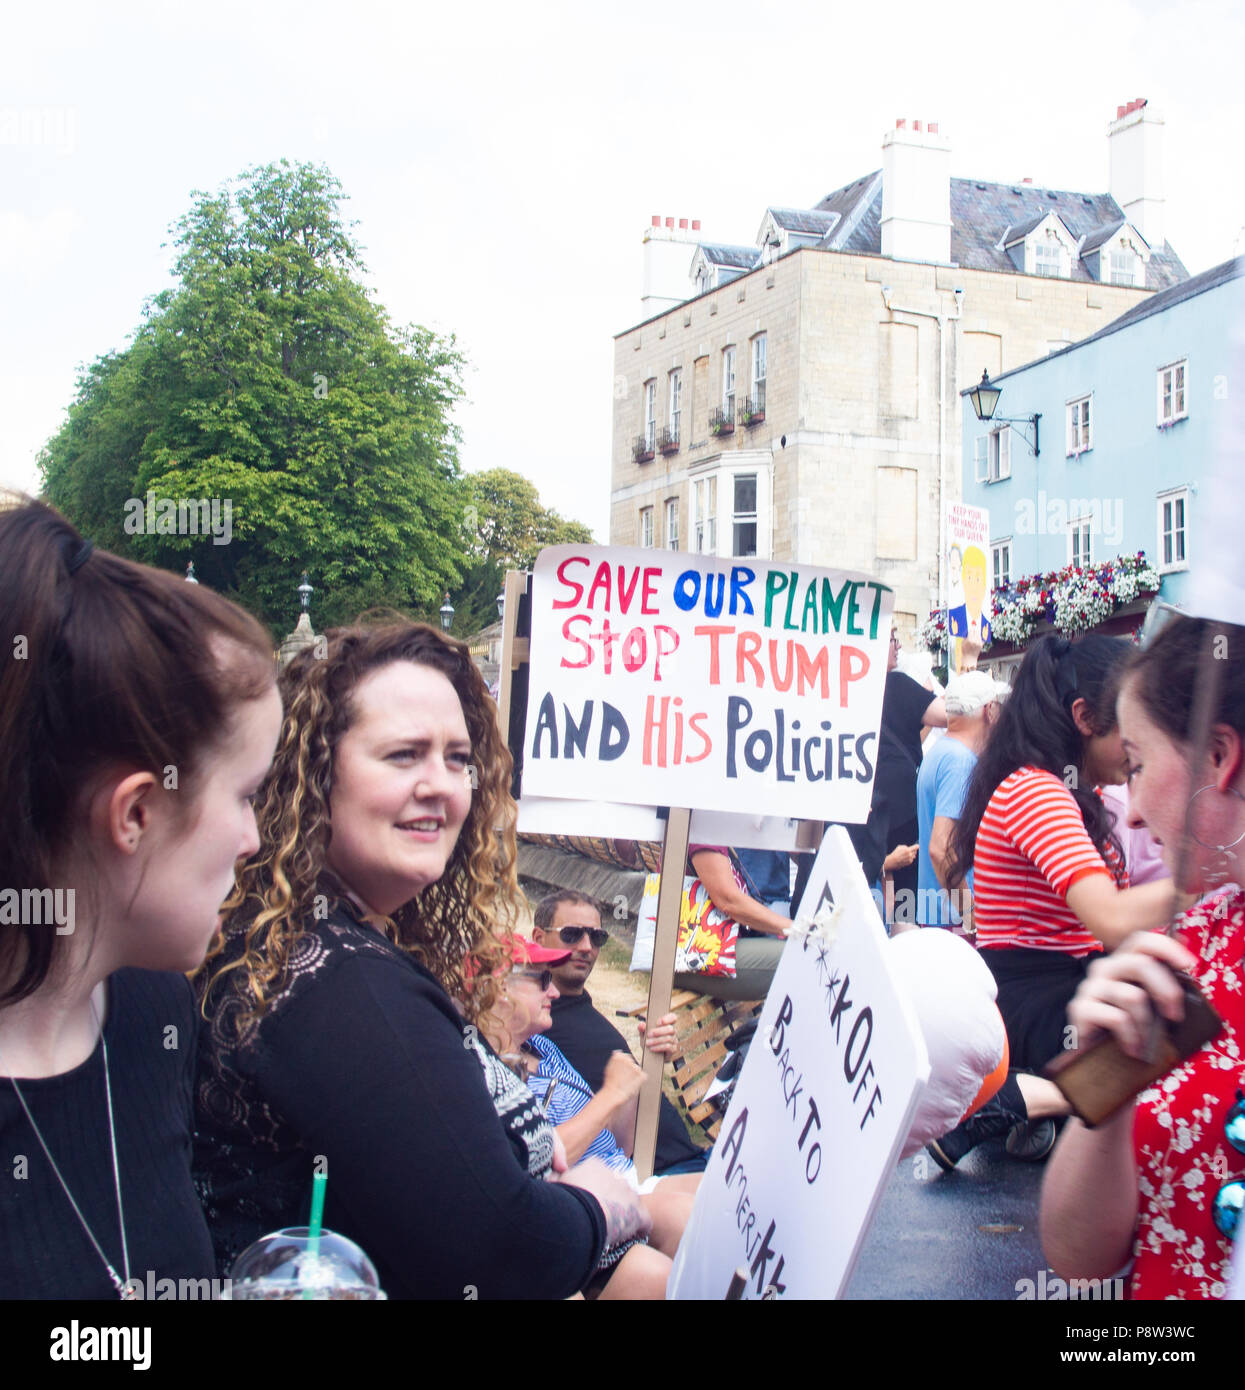 2018 luglio: I manifestanti anti anti anti Trump si sono riuniti oggi al di fuori del Castello di Windsor, prima di una visita del presidente degli Stati Uniti. Windsor, UK Bridget Catterall Windsor, UK Alamy Live News UK Foto Stock